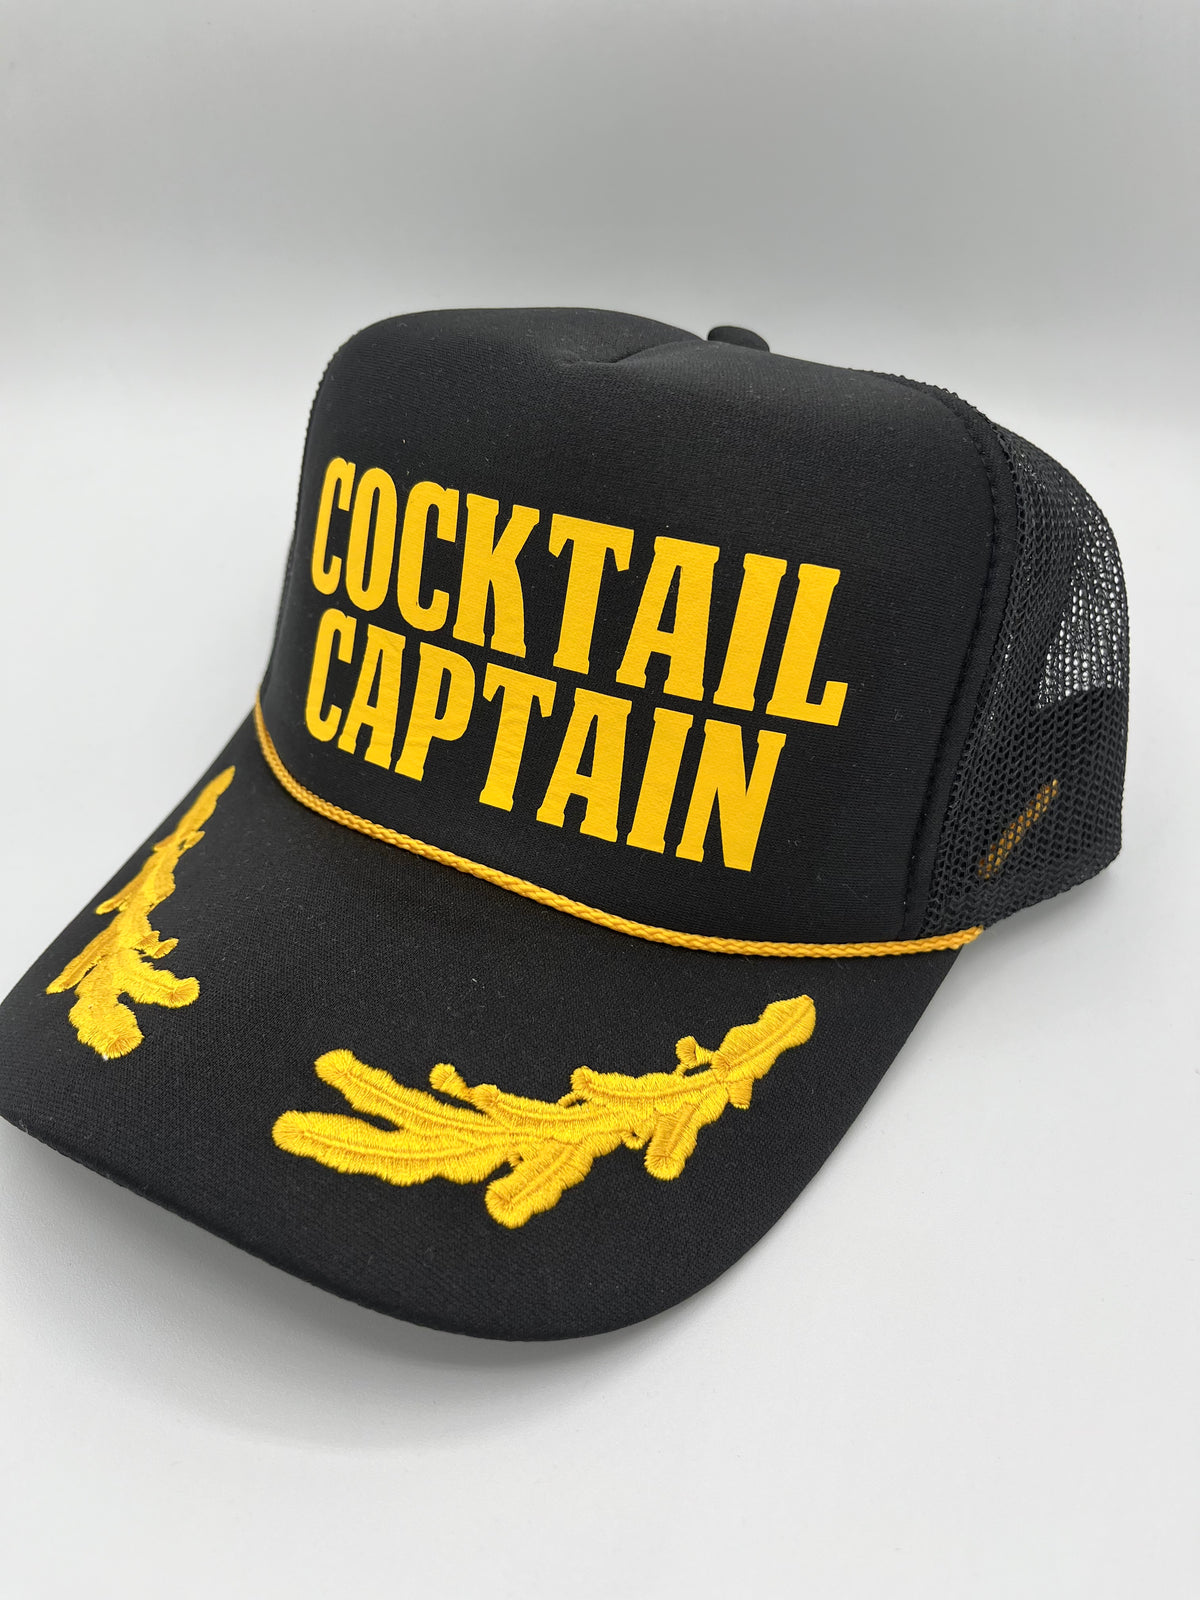 Cocktail Captain Hat